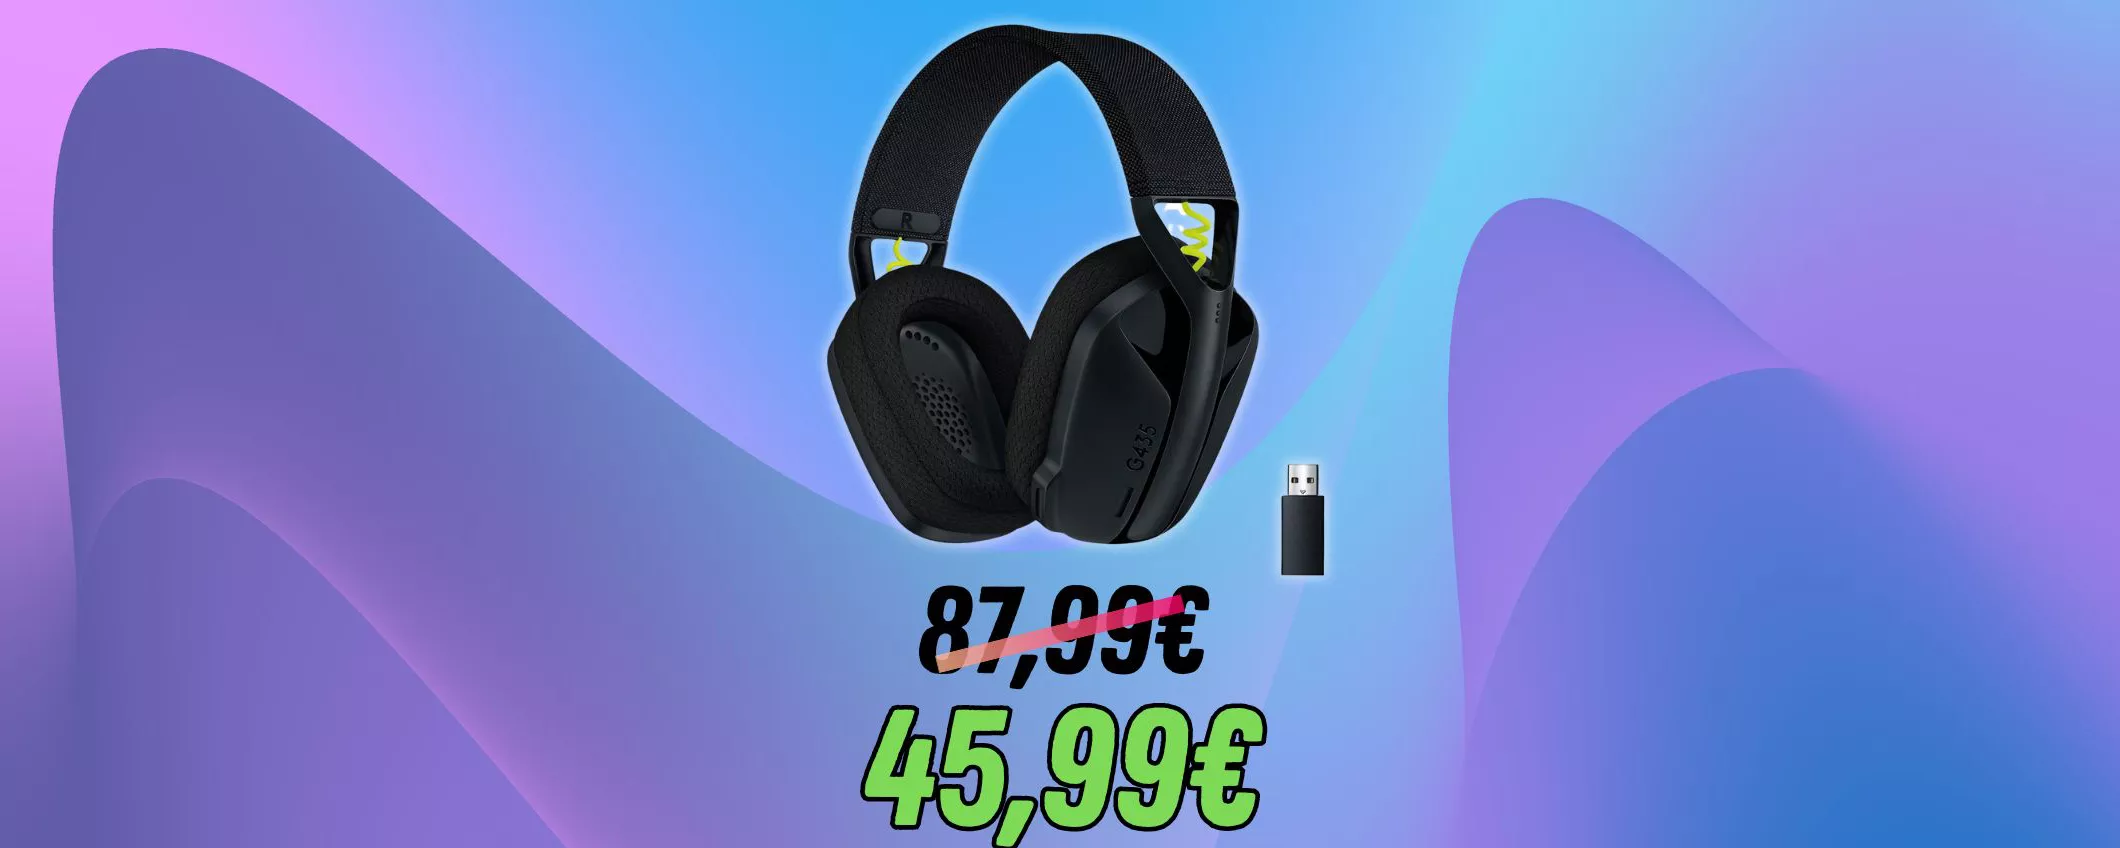 Acquista Logitech G435 LIGHTSPEED Gaming Cuffie Over Ear Bluetooth